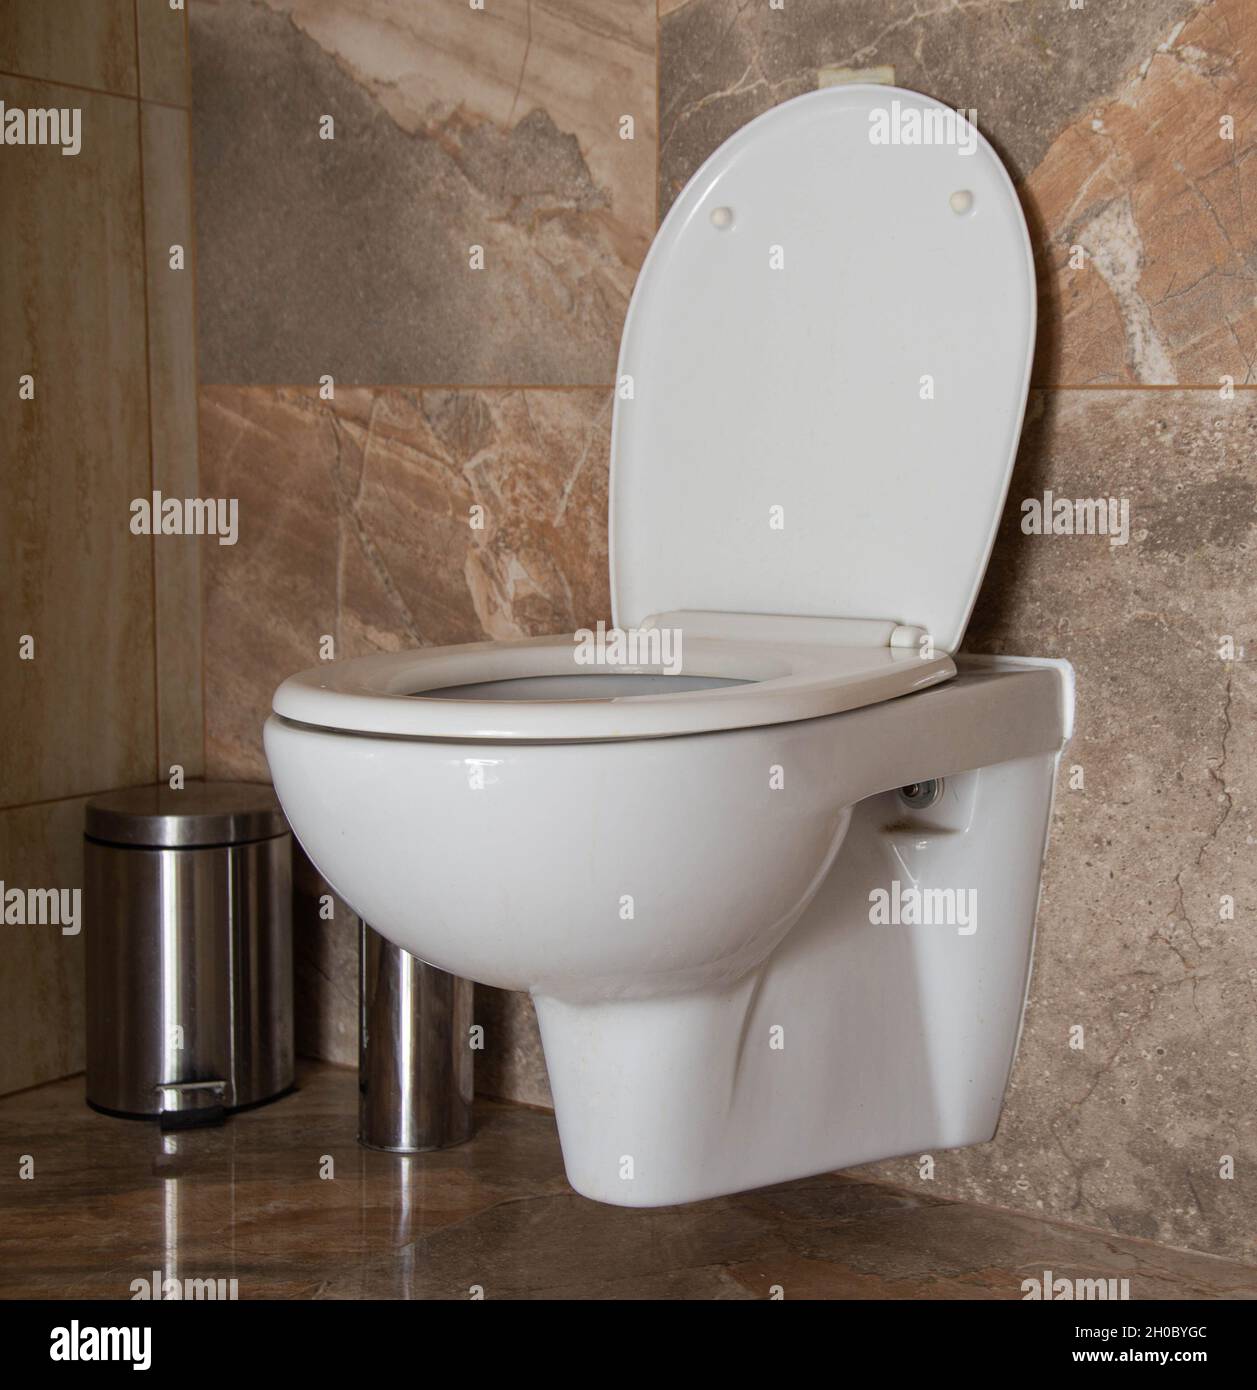 Toilette in der Toilette mit Mülleimer in der Ecke, braune Keramikfliesen.  Toilette innen Stockfotografie - Alamy